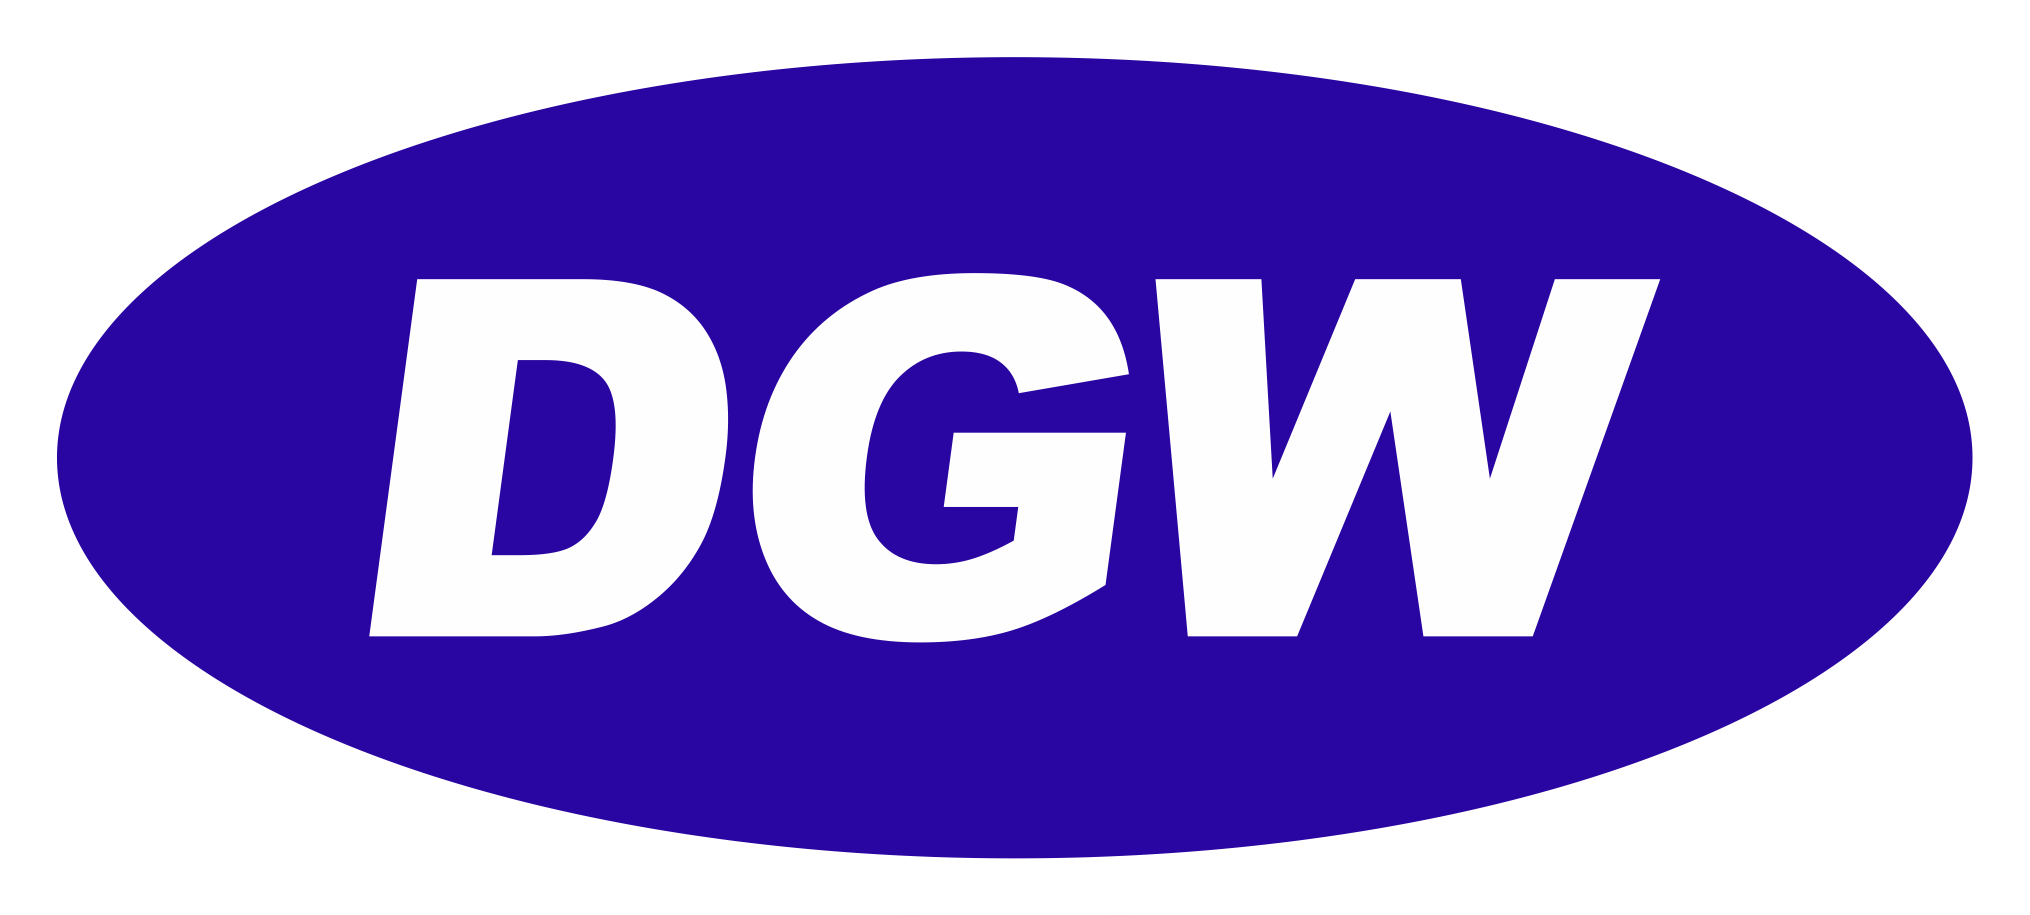 DGW